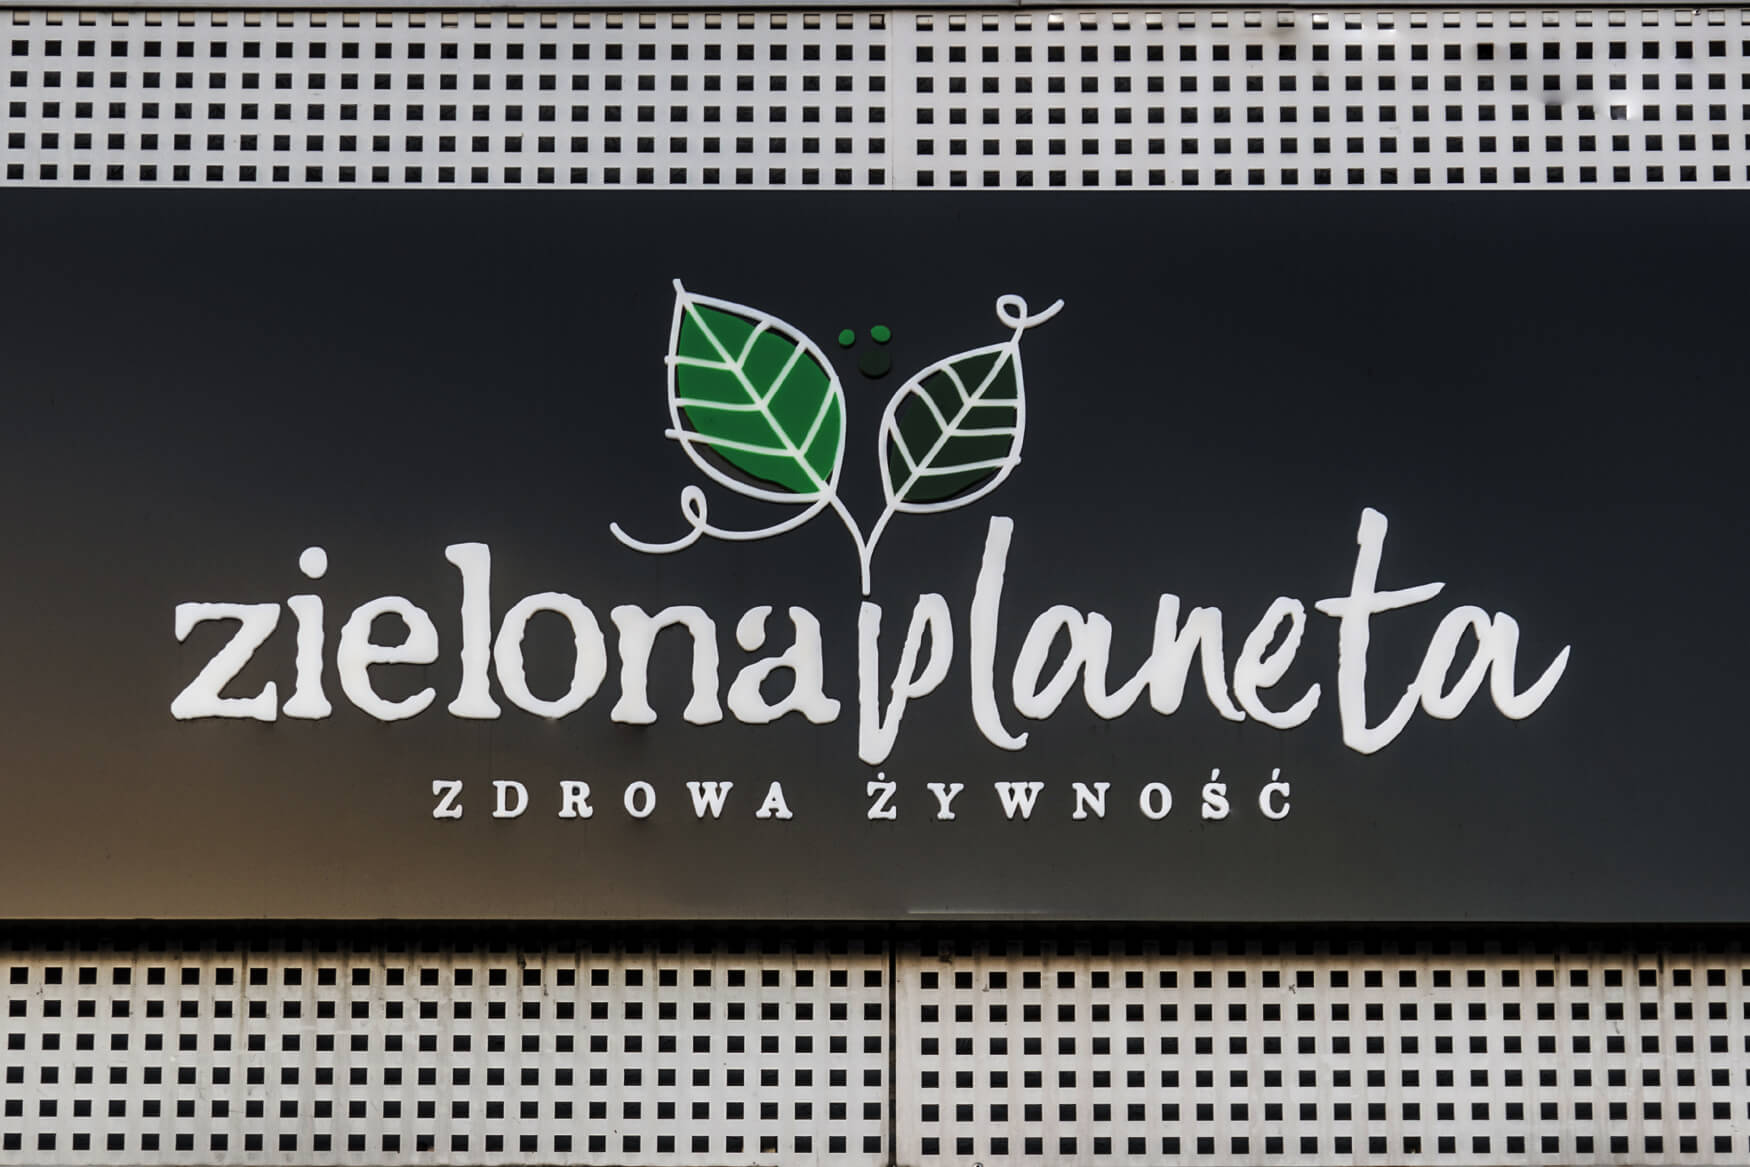 pianeta verde - Zielona Planeta - cofanetto pubblicitario illuminato con lettere e logo spaziale